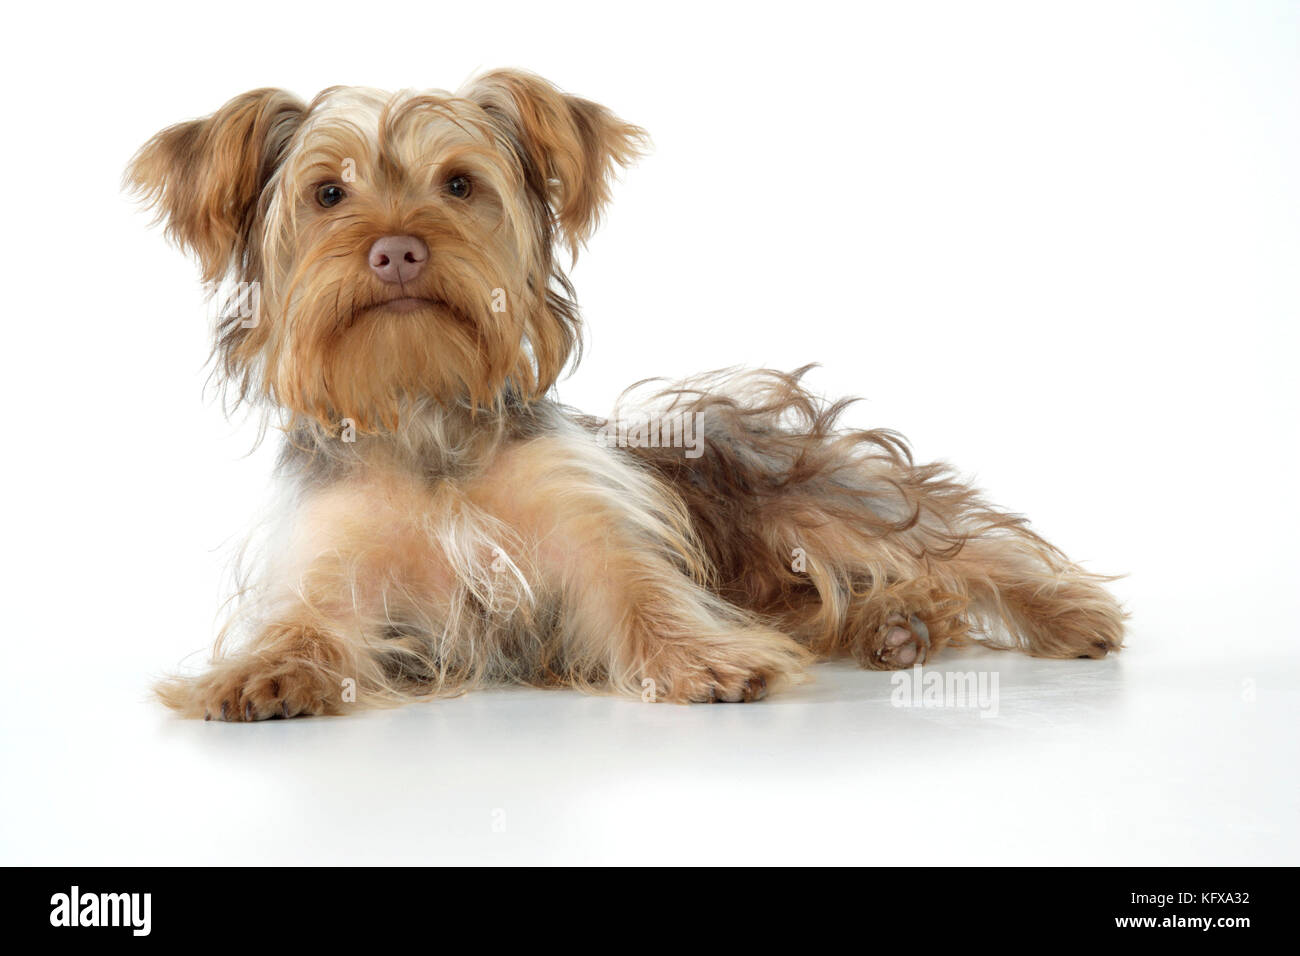 Hund - Pudel x Yorkie (yoodle oder Yorkie poo). Überqueren sie die Rasse Pudel und Yorkshire Terrier. Stockfoto